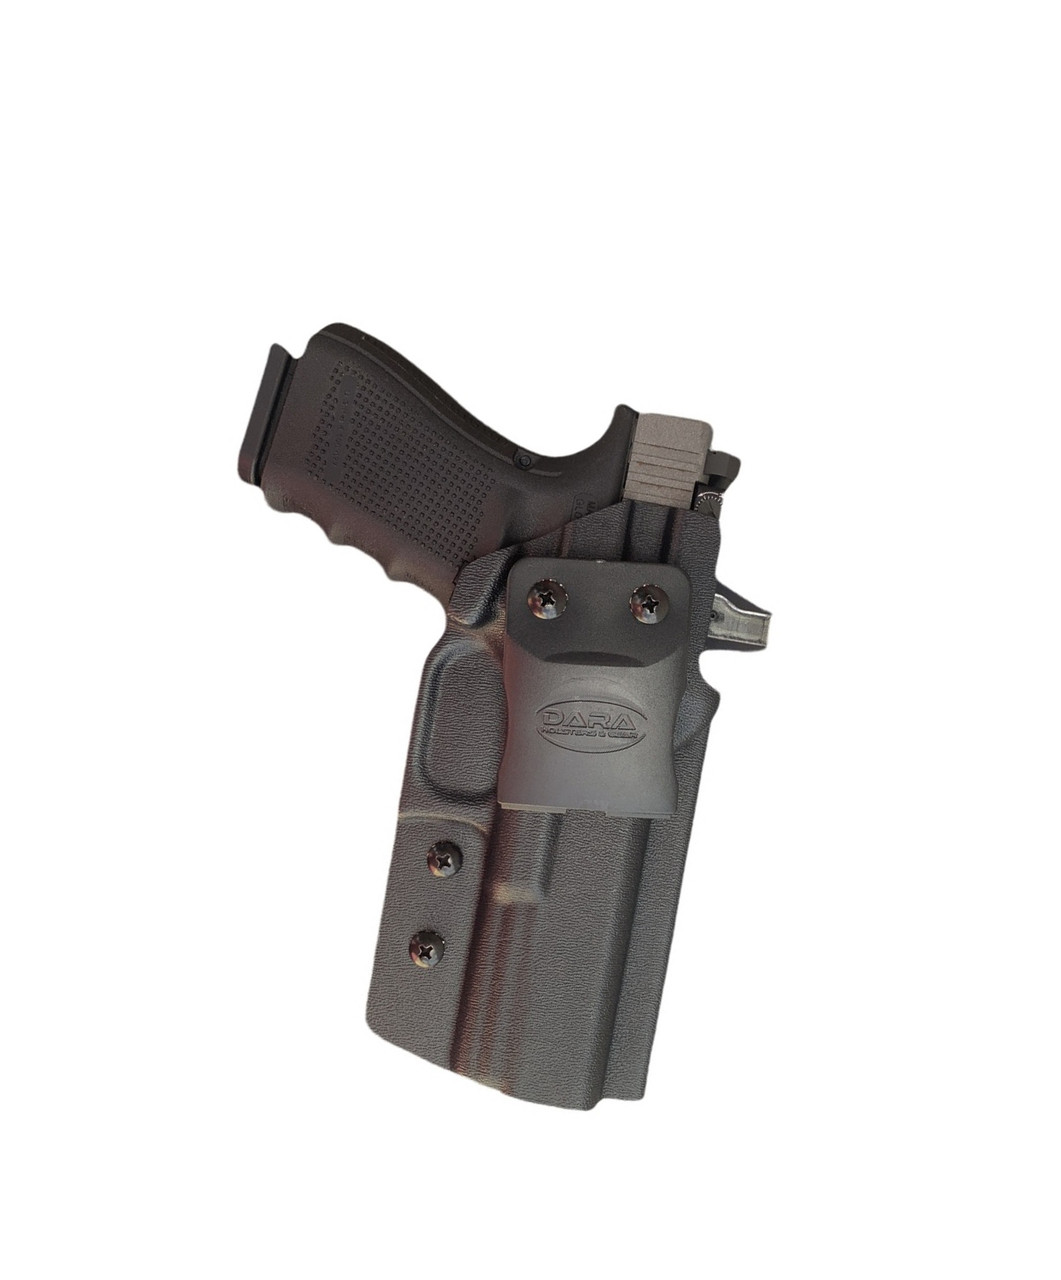 New holster 🤪 : r/Glock19